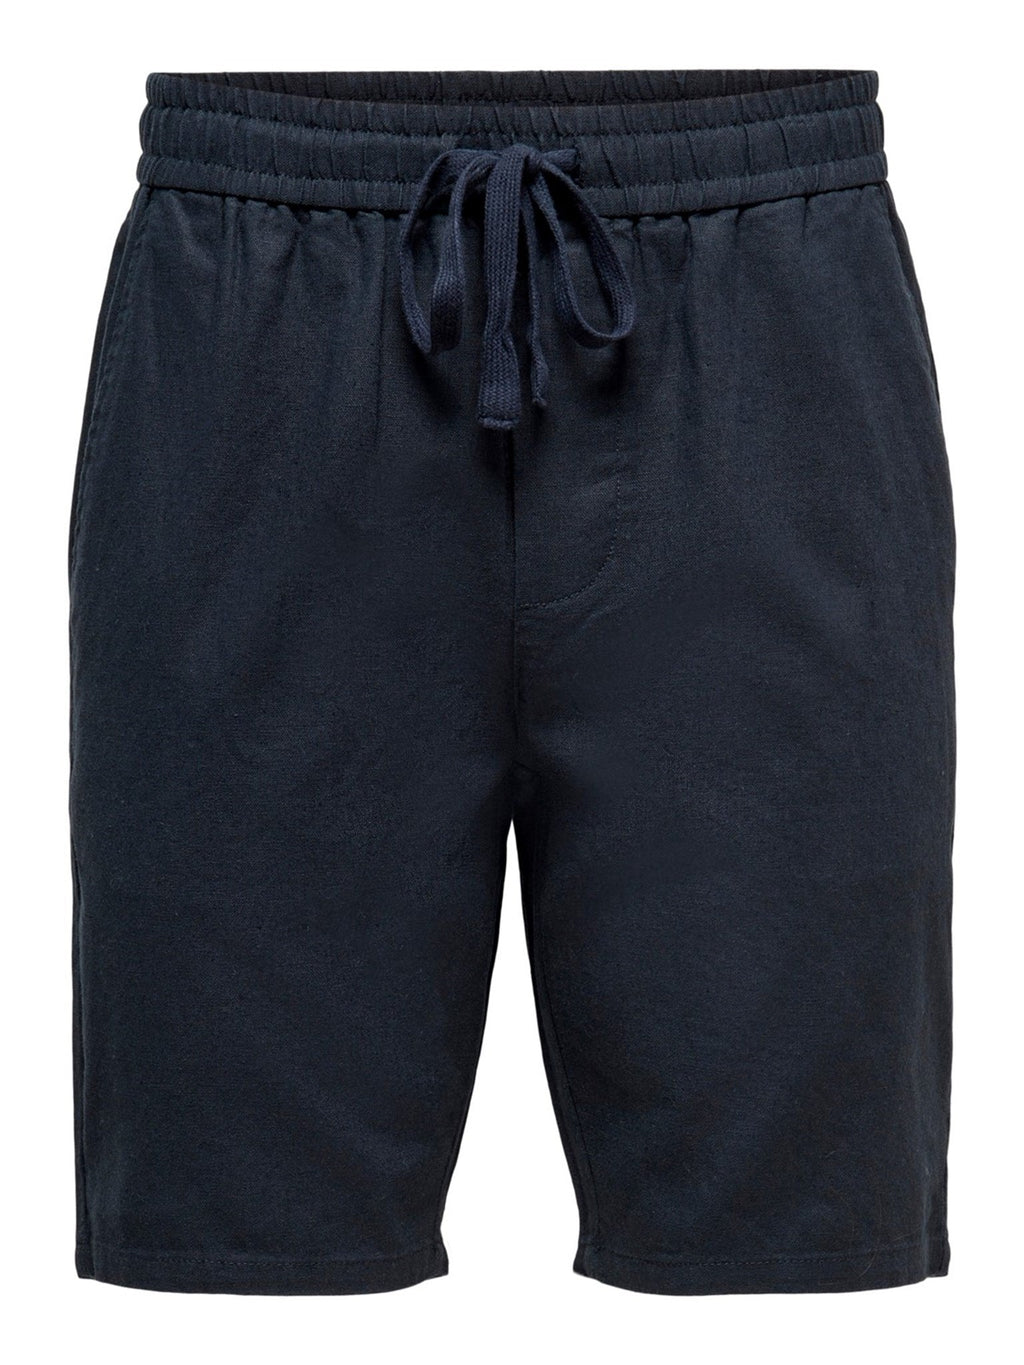 Linus -Leinen Shorts - Dark Navy